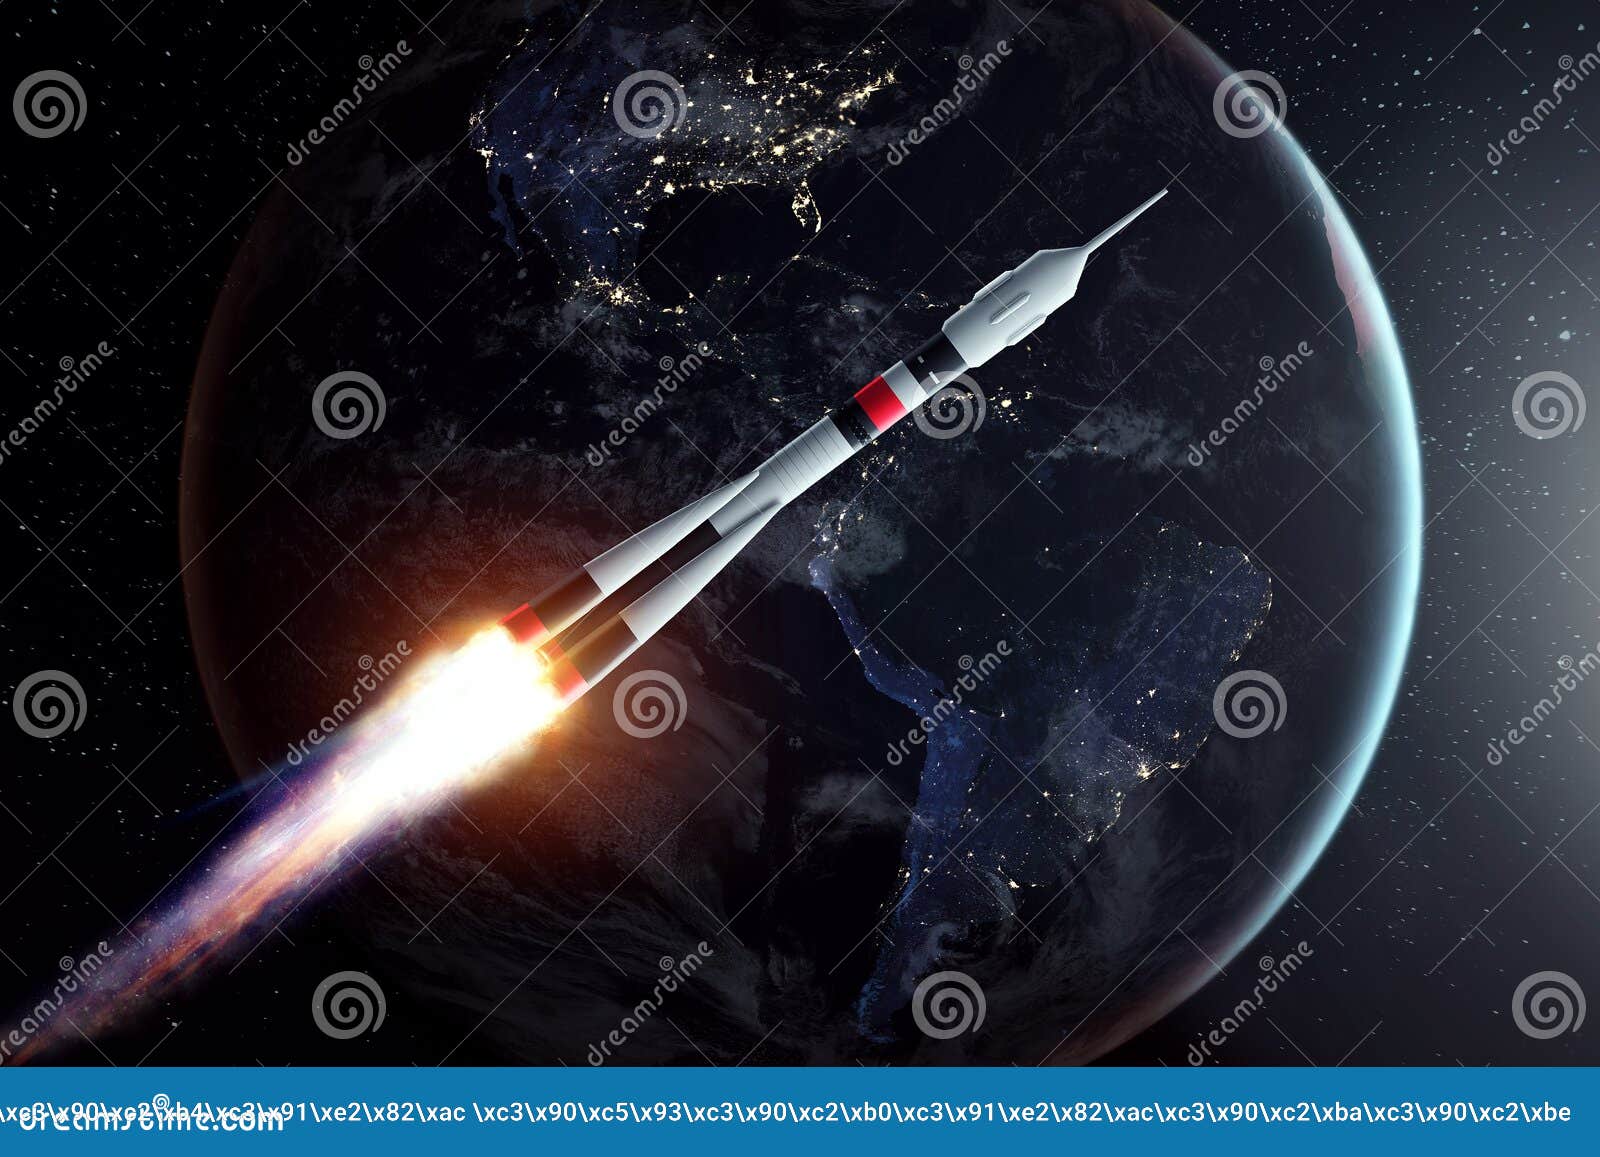 Песня я ракета полетела в космос раз. Ракета на фоне земли. Картинки космические аппараты летают качественные. Flying Rockets in Space. ONEWEB спутники.